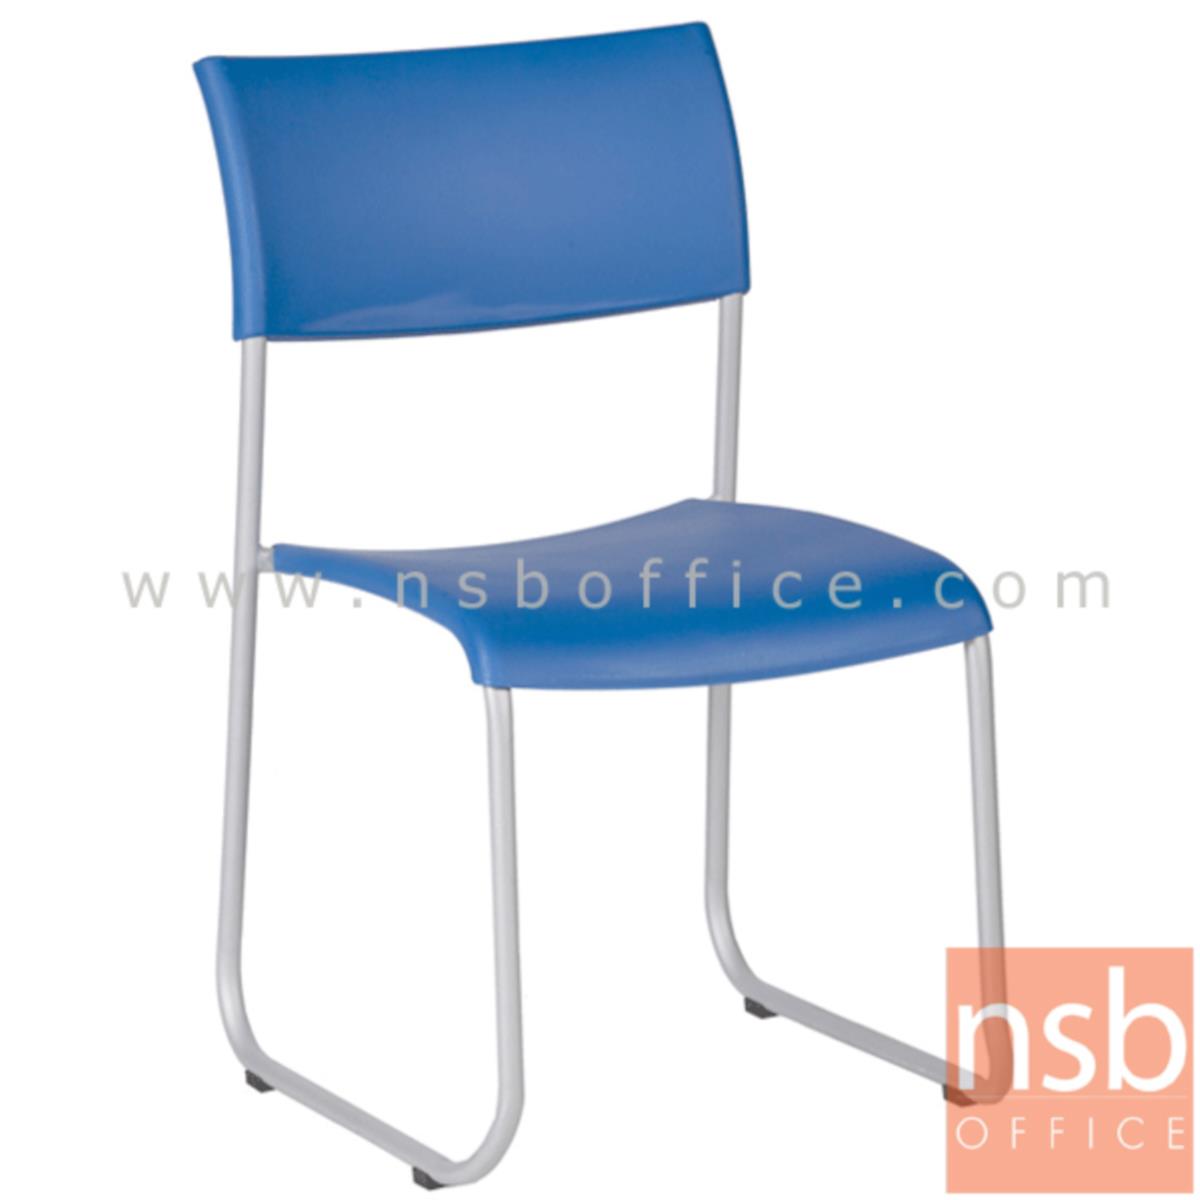 B05A058:เก้าอี้อเนกประสงค์เฟรมโพลี่ รุ่น B718  ขาเหล็กตัวยูพ่นสีเทา